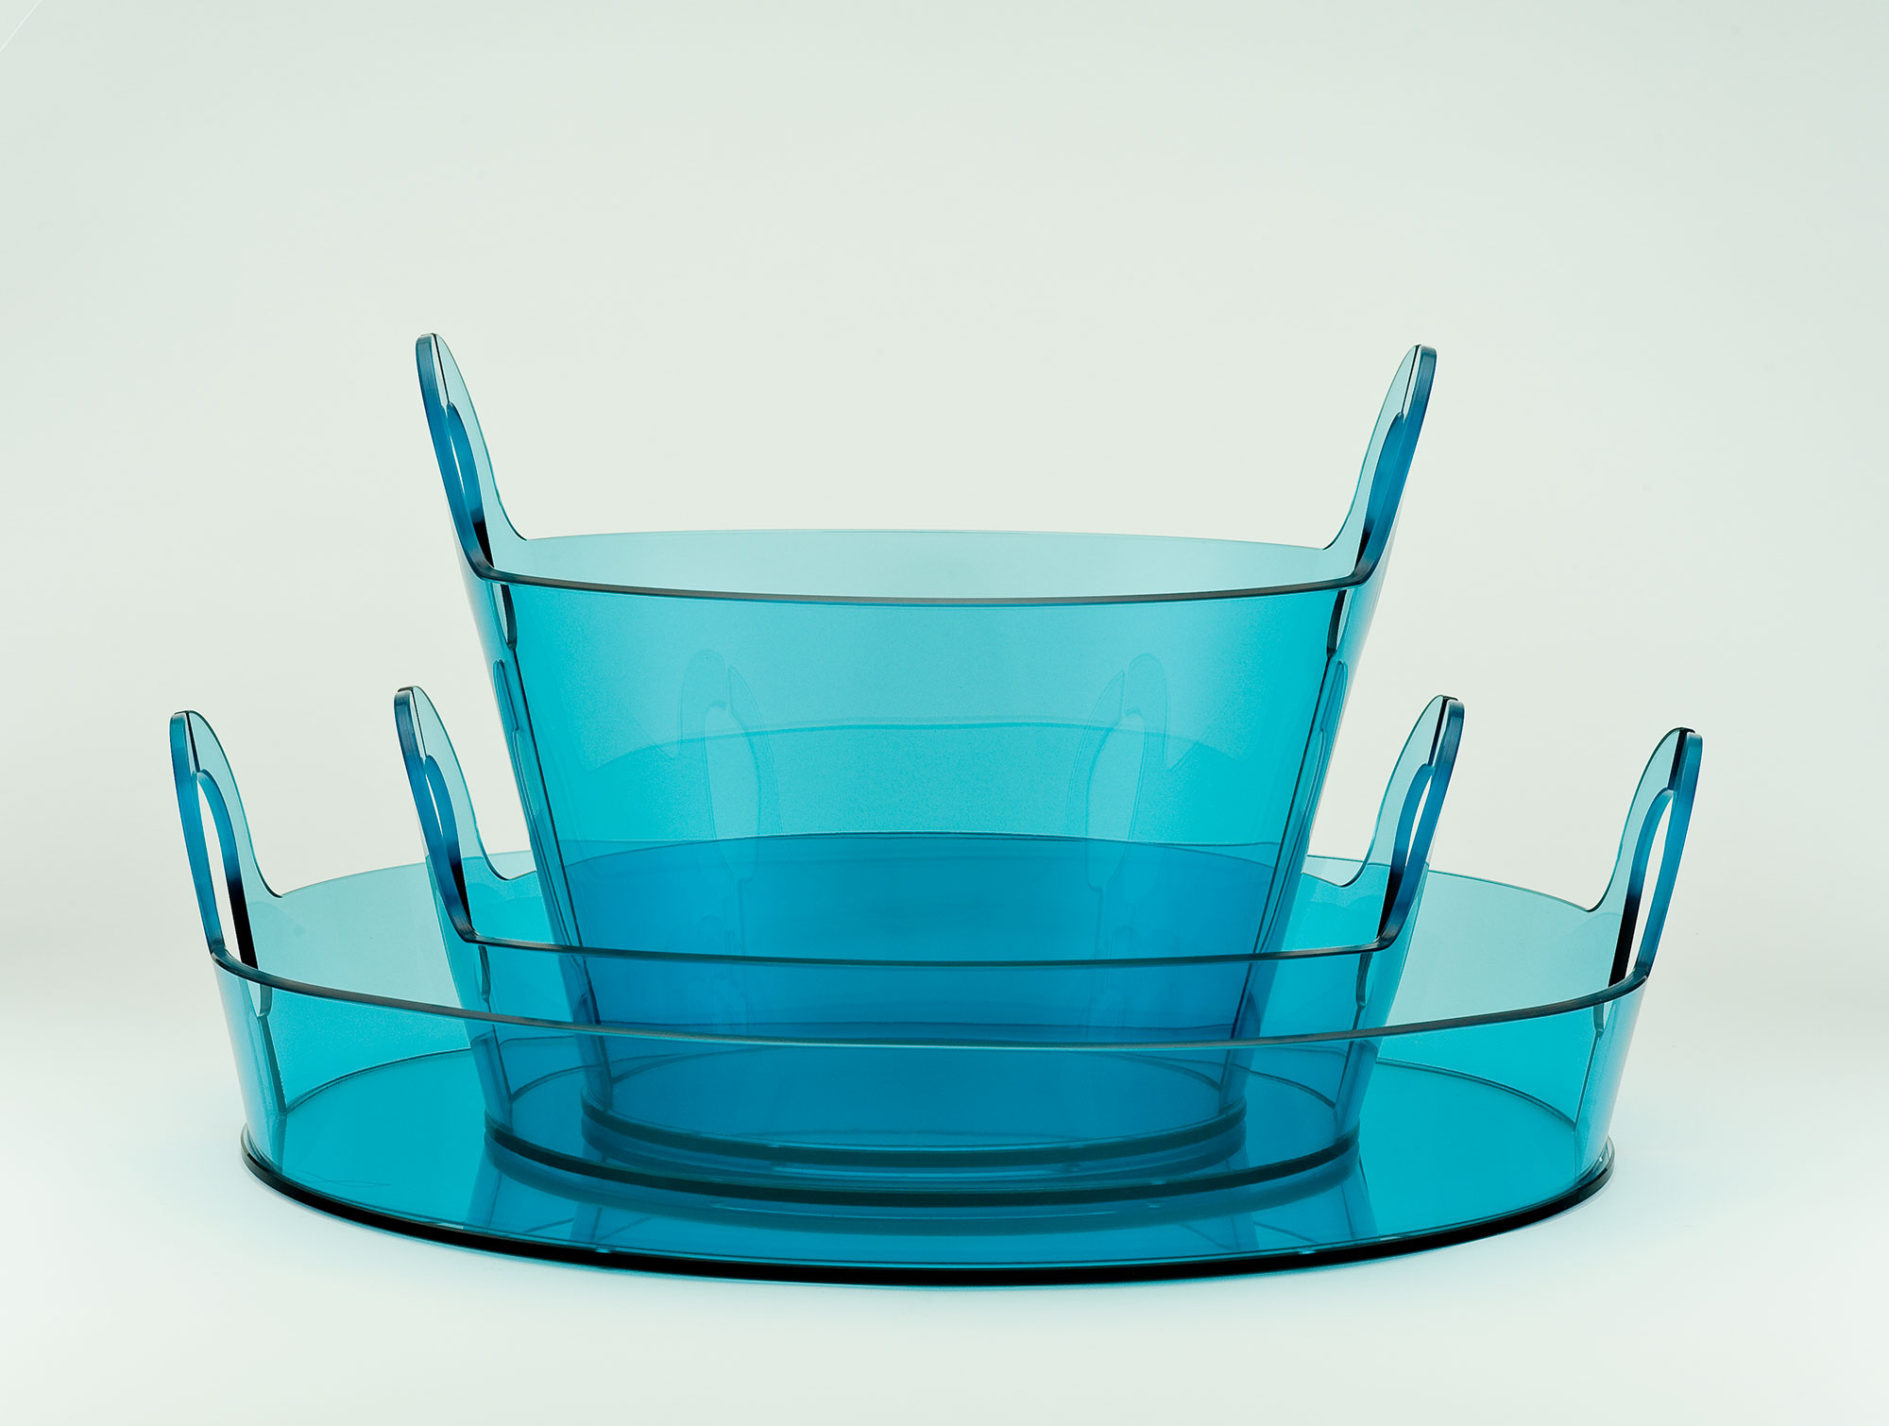 Ensemble de paniers circulaires empilables en verre translucide bleu de tailles et proportions diverses.